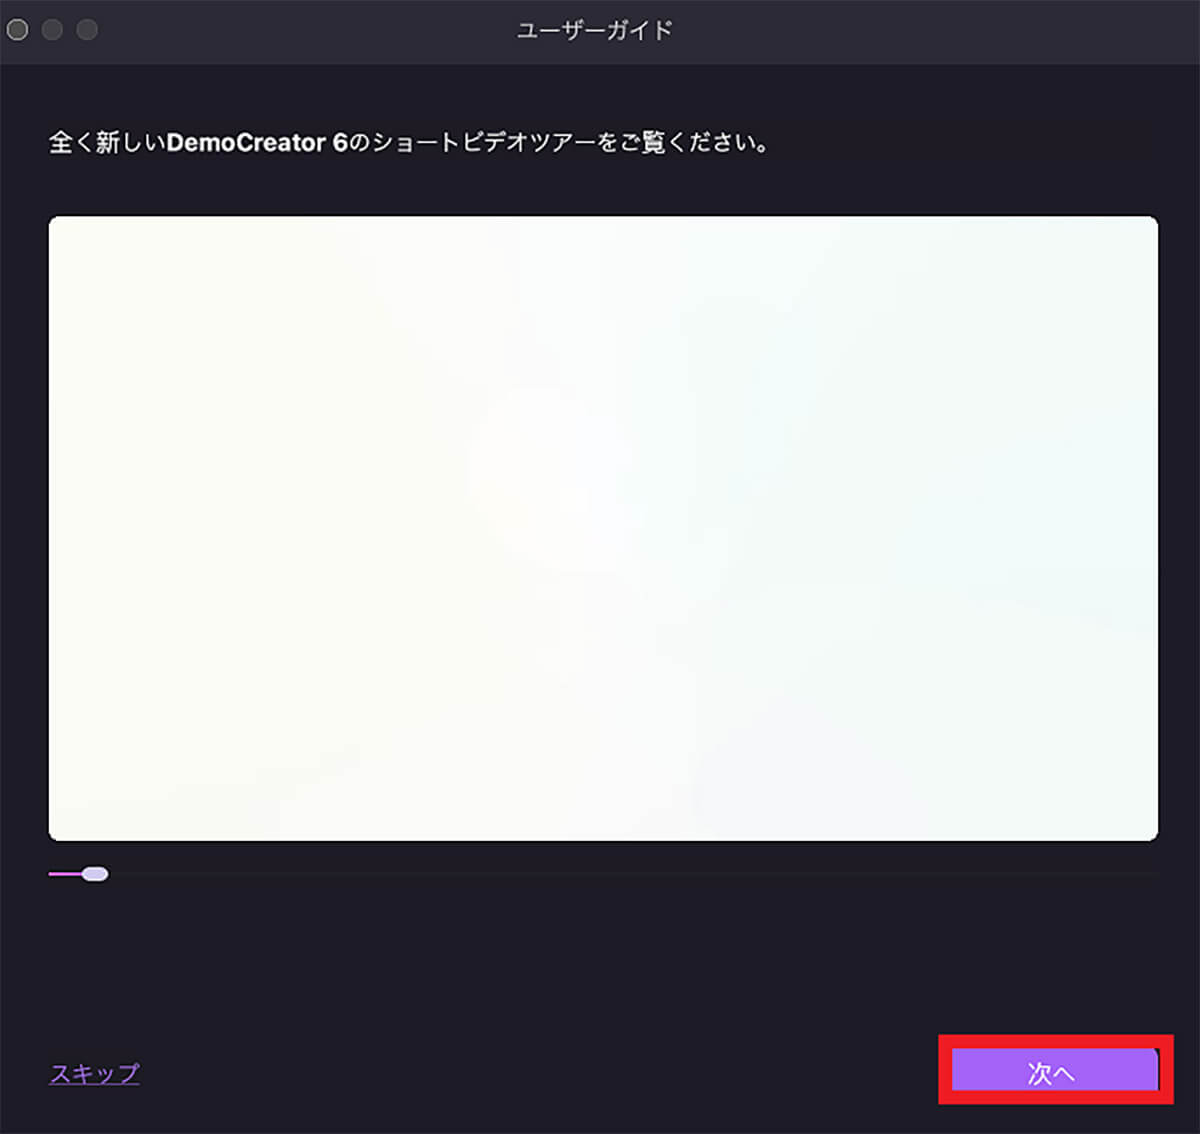 【手順①】Wondershare DemoCreatorをダウンロードし起動7